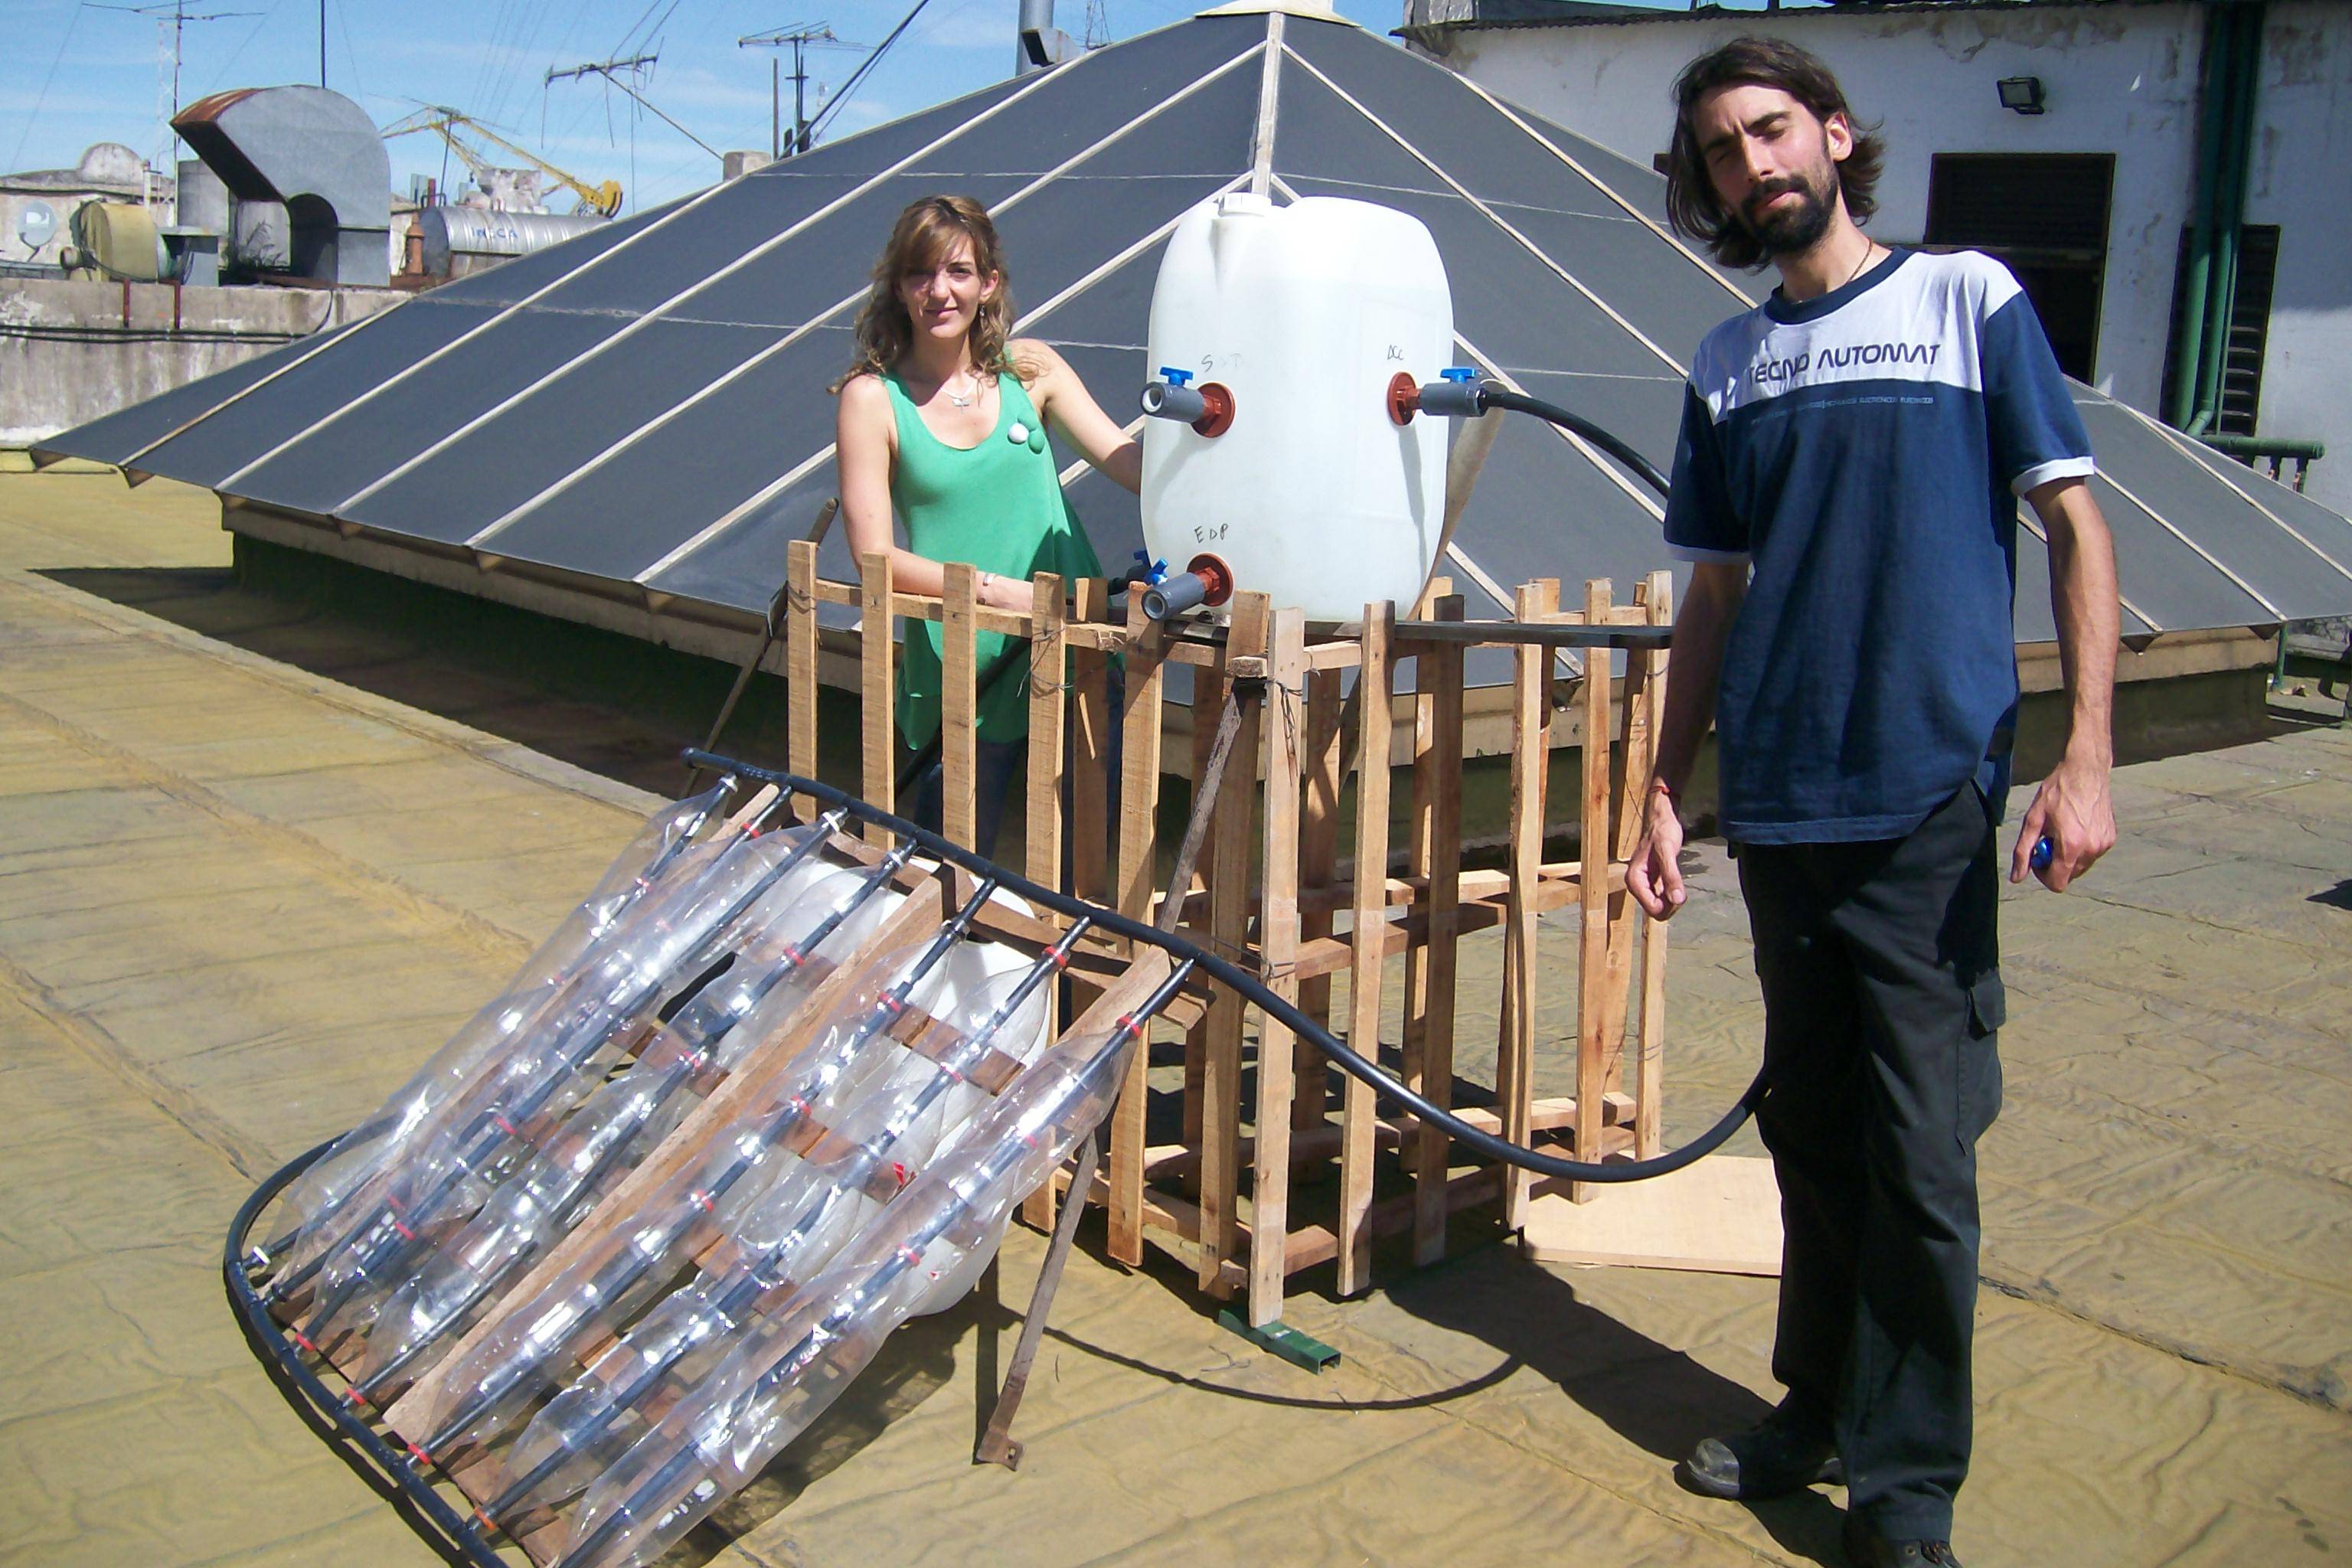 Солнечный коллектор для отопления дома своими руками